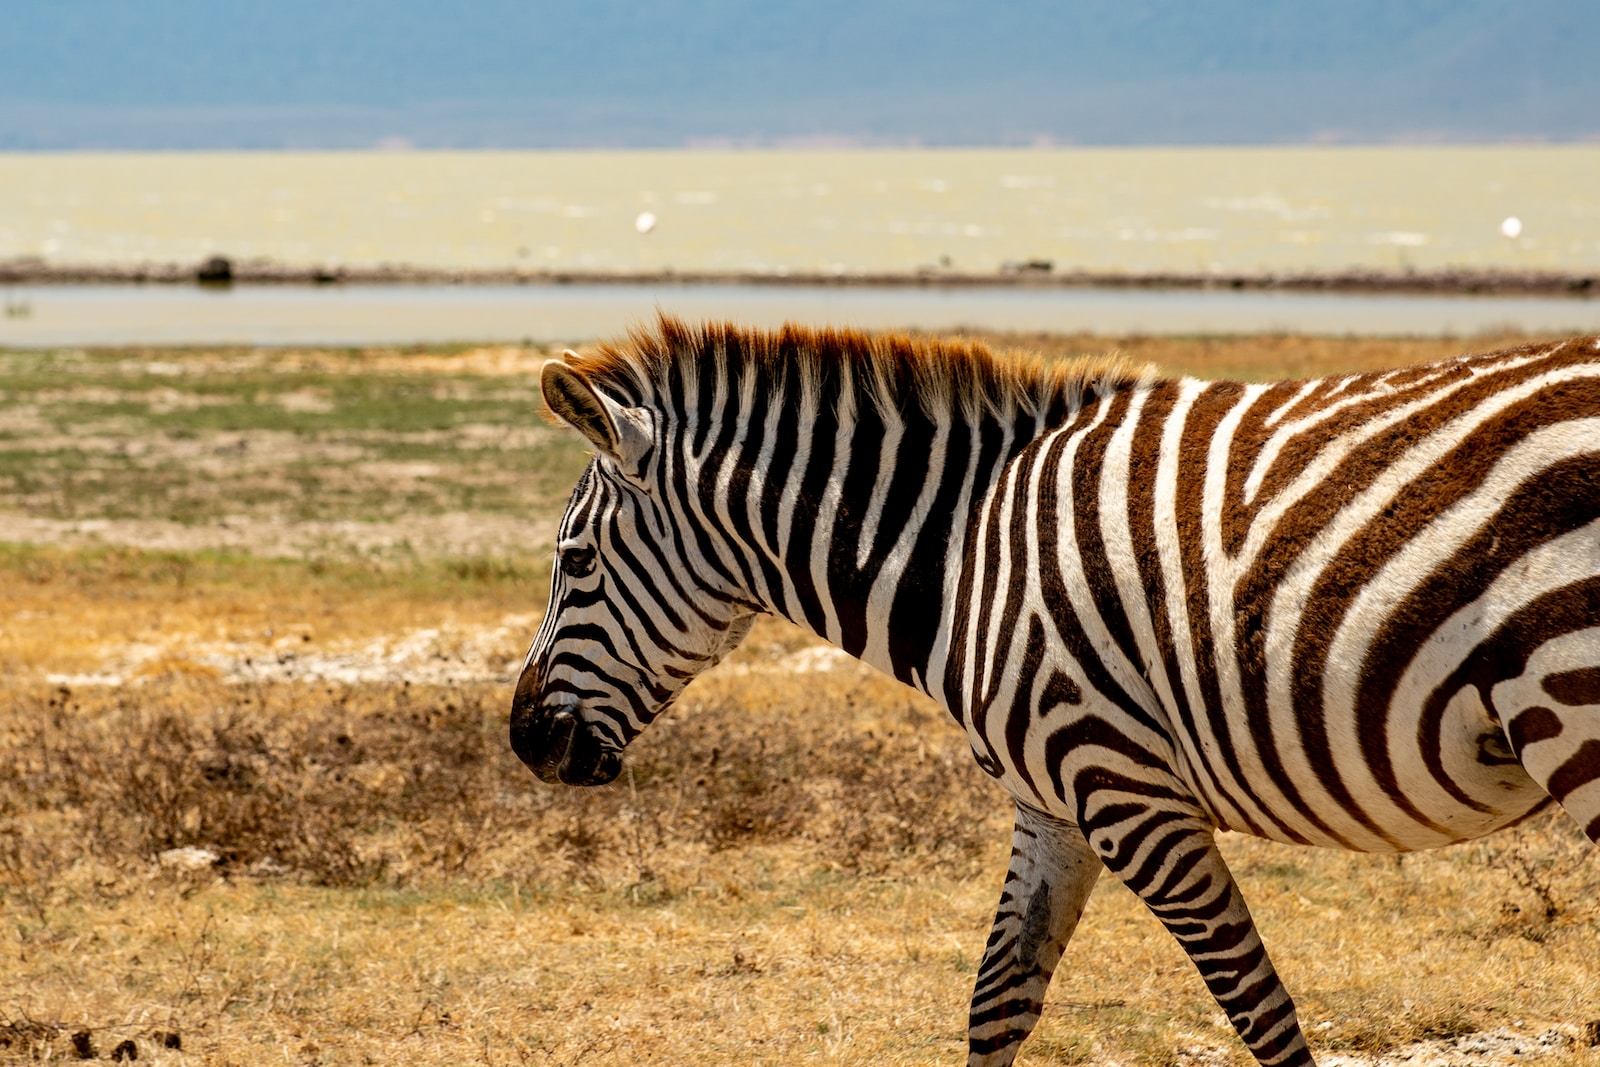 Tanzanie : Guide ultime pour visiter le pays des safaris et des trésors naturels